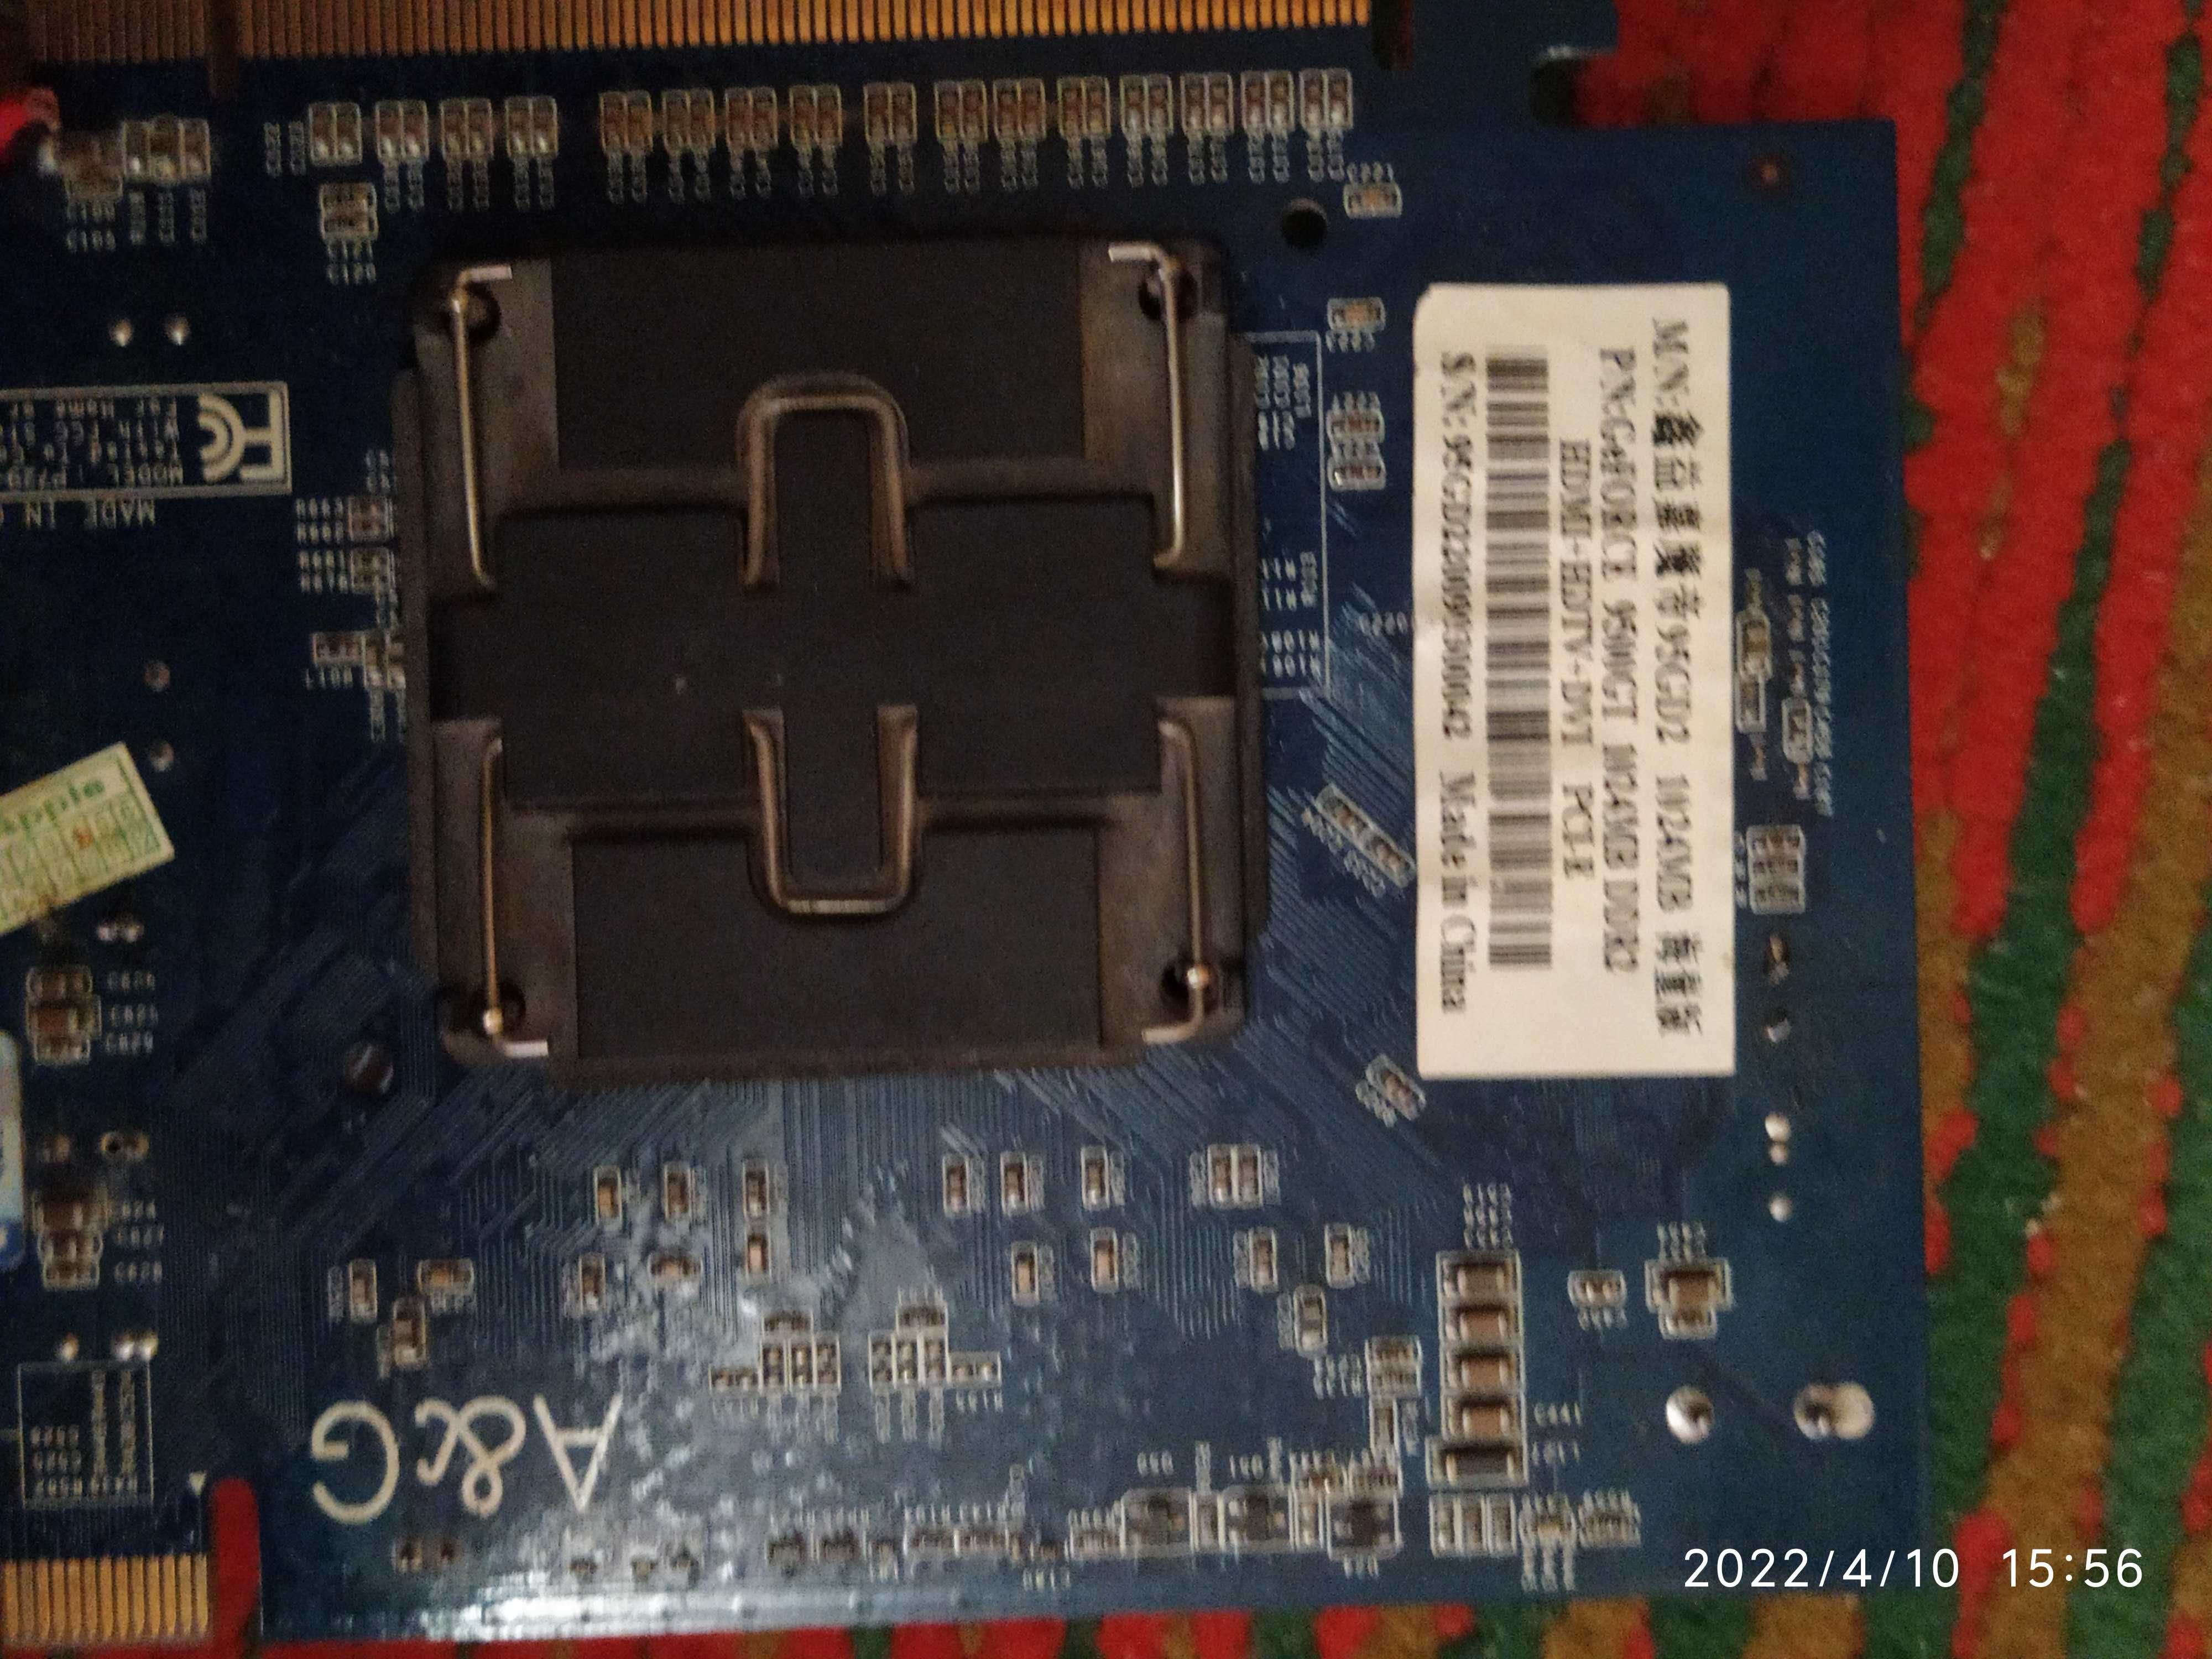 GeForce 9500GT 1GB DDR2